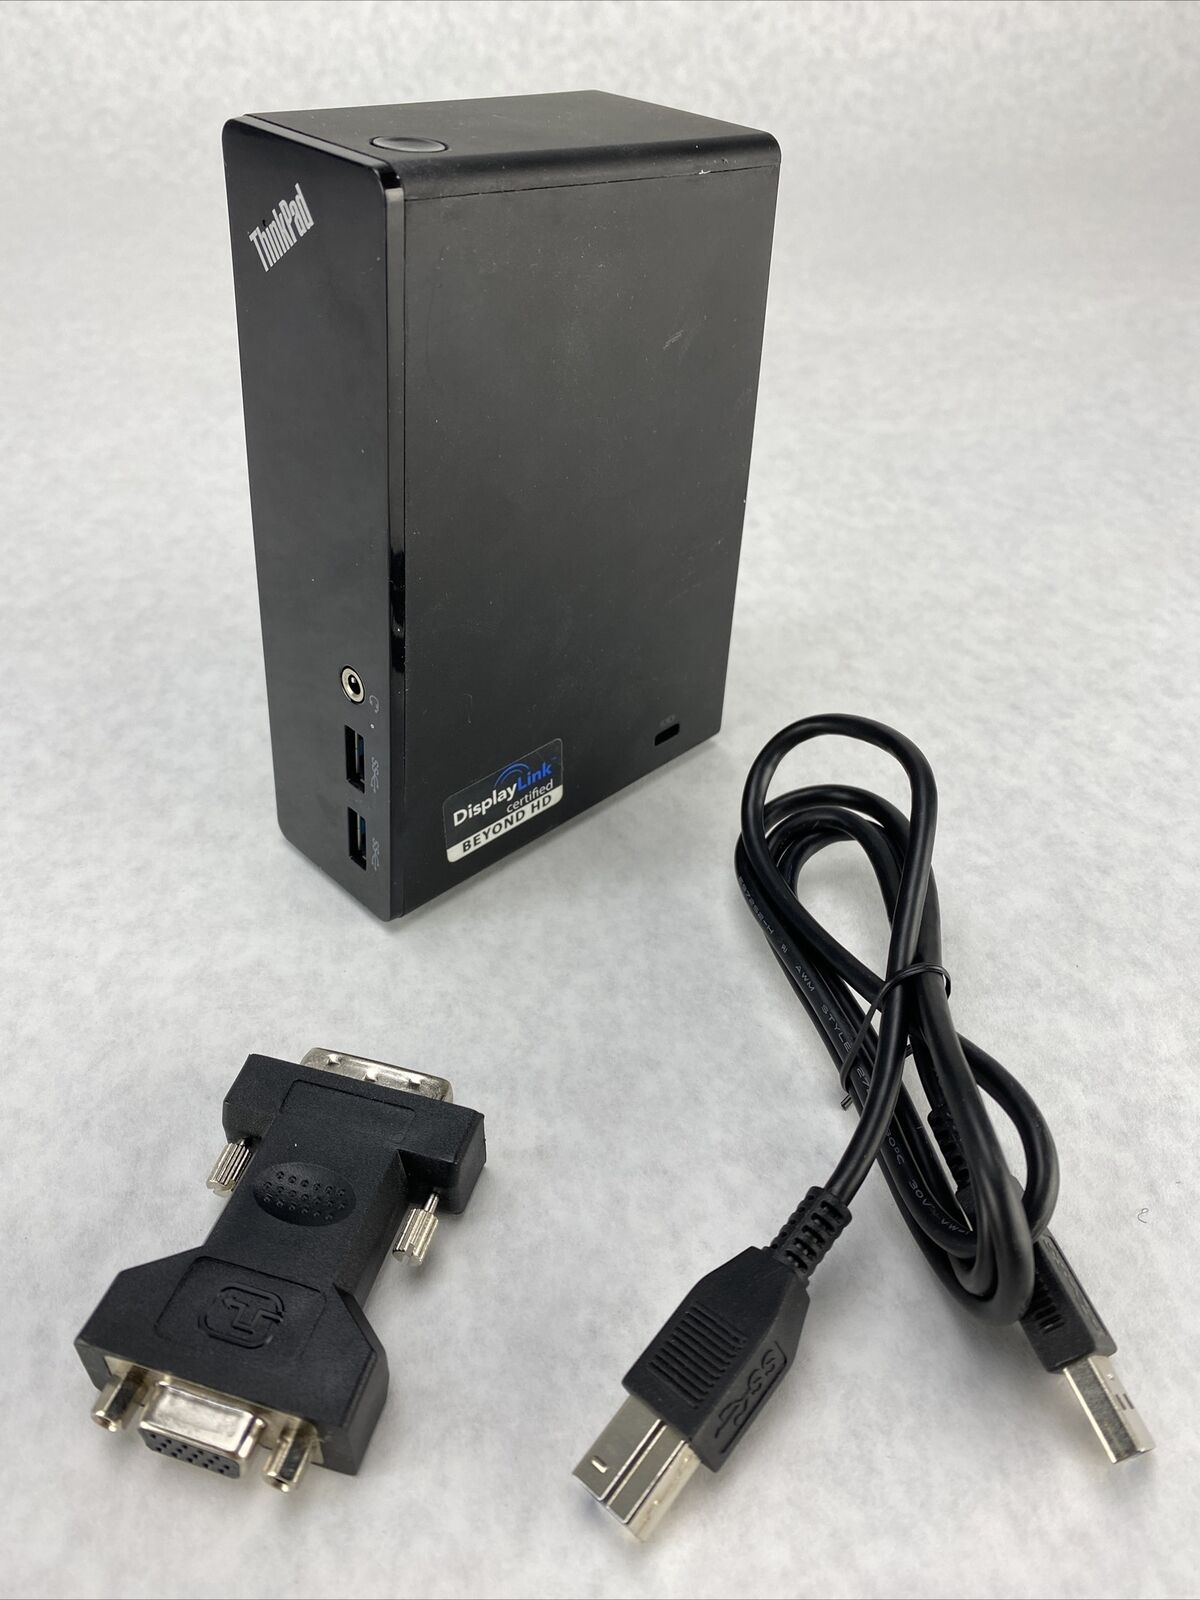 Lenovo 03X6059 DU9019D1 USB 3.0 Docking Station for ThinkPad NO POWER SUPPLY